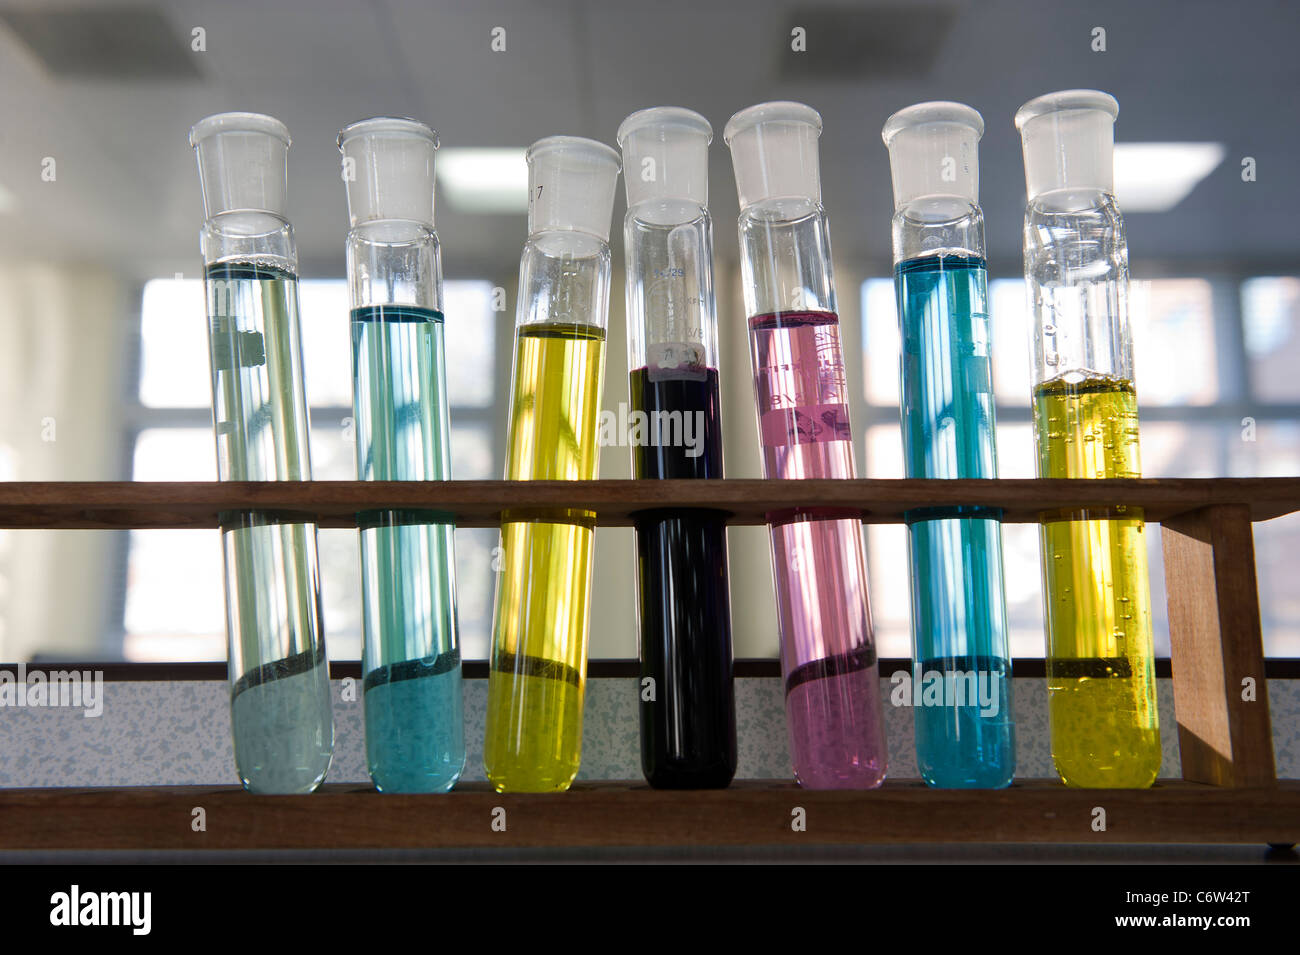 Tubos de ensayo en un rack en un laboratorio de química. Foto de stock